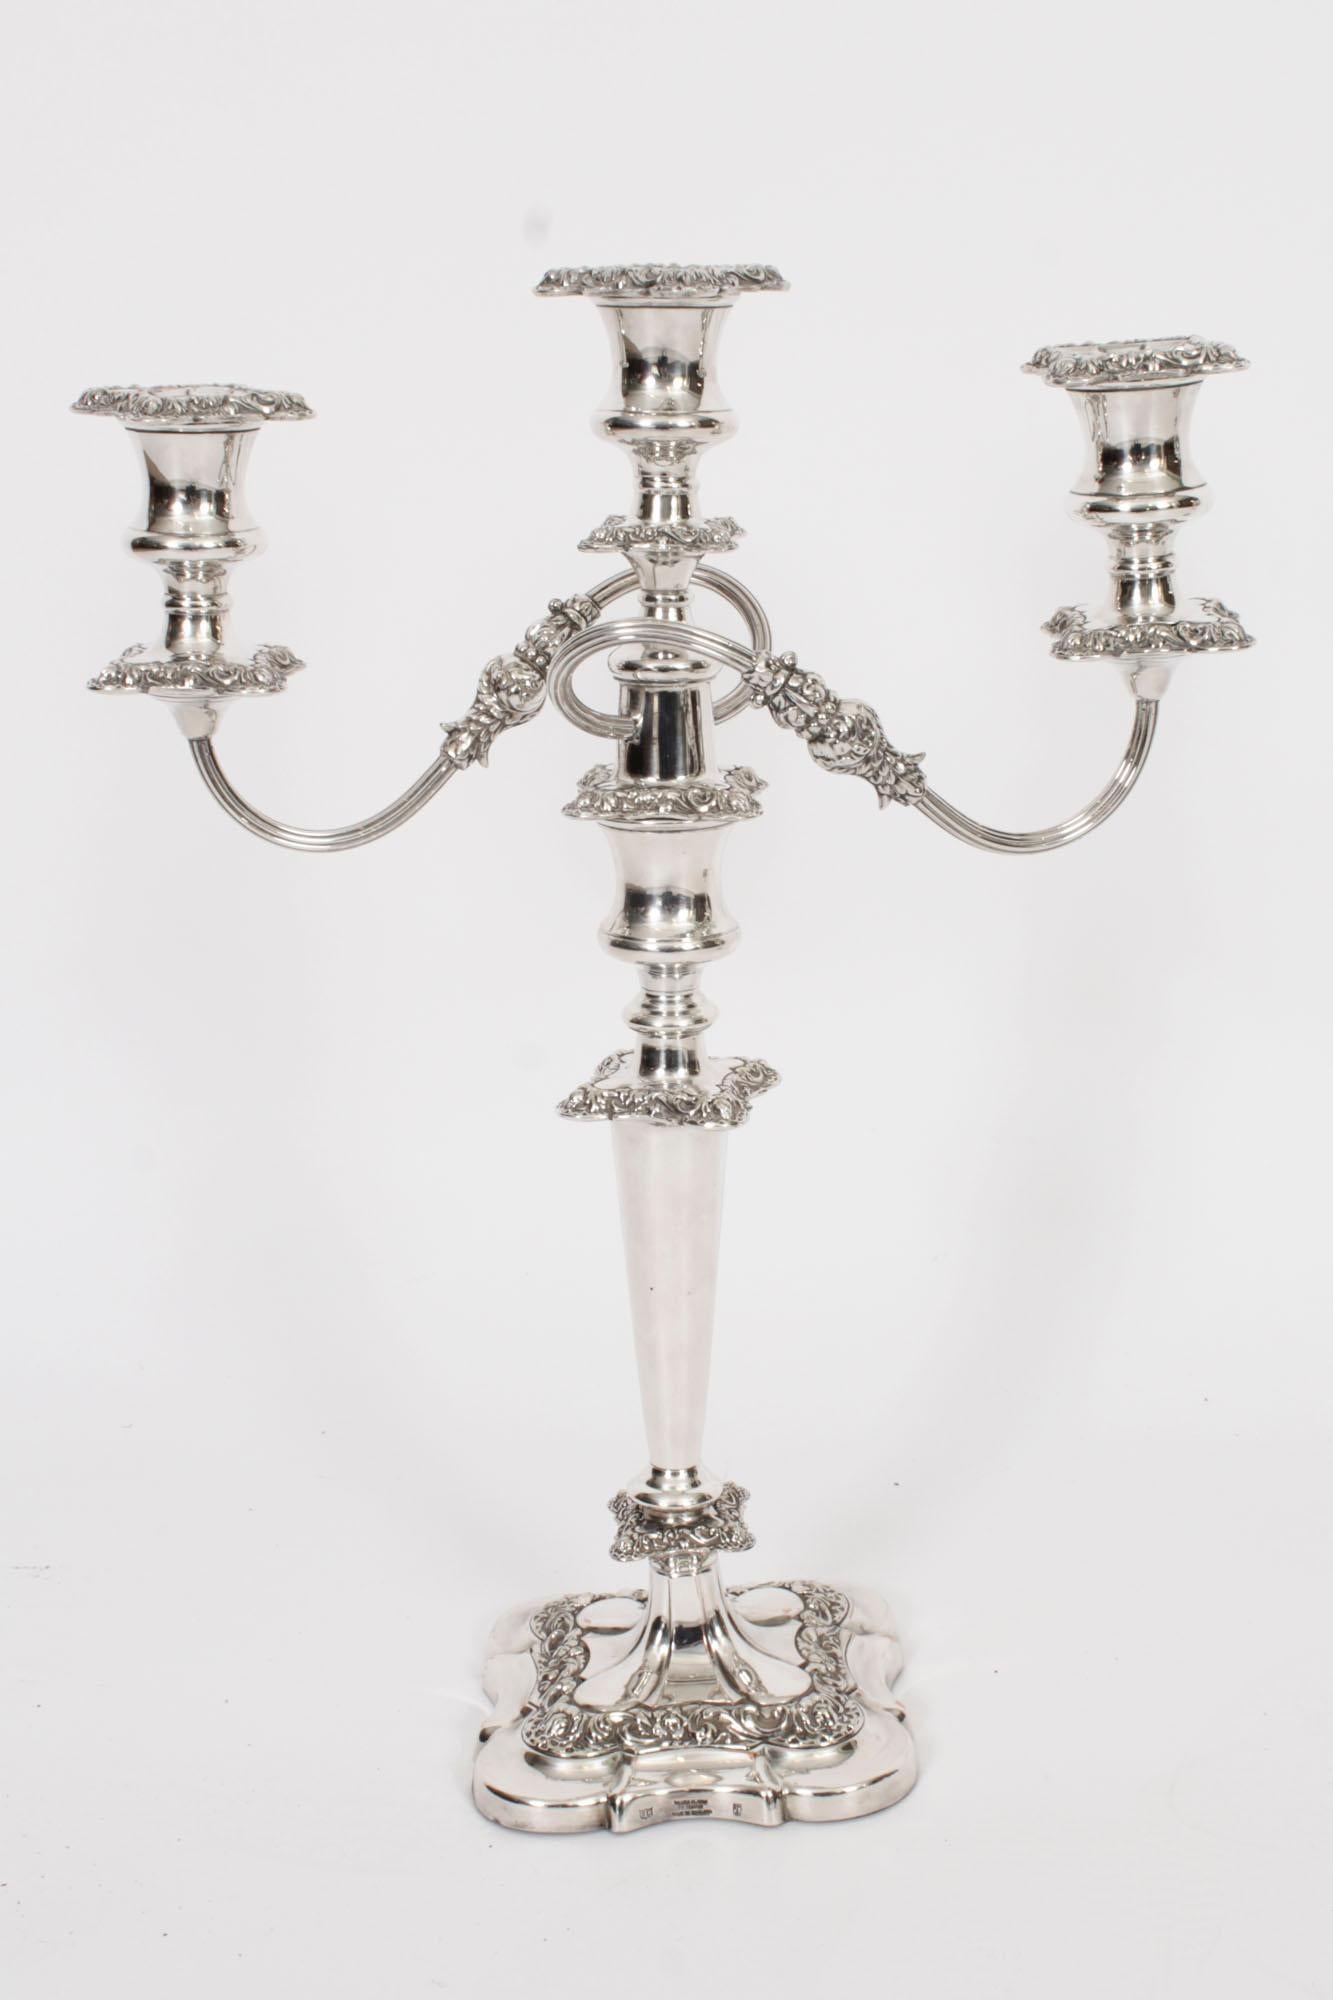 Il s'agit d'une magnifique paire de candélabres anglais anciens à trois lumières en métal argenté sur cuivre, chacun portant la marque du célèbre orfèvre Stevenson & Law, datant d'environ 1920.
 
Chaque candélabre présente une impressionnante